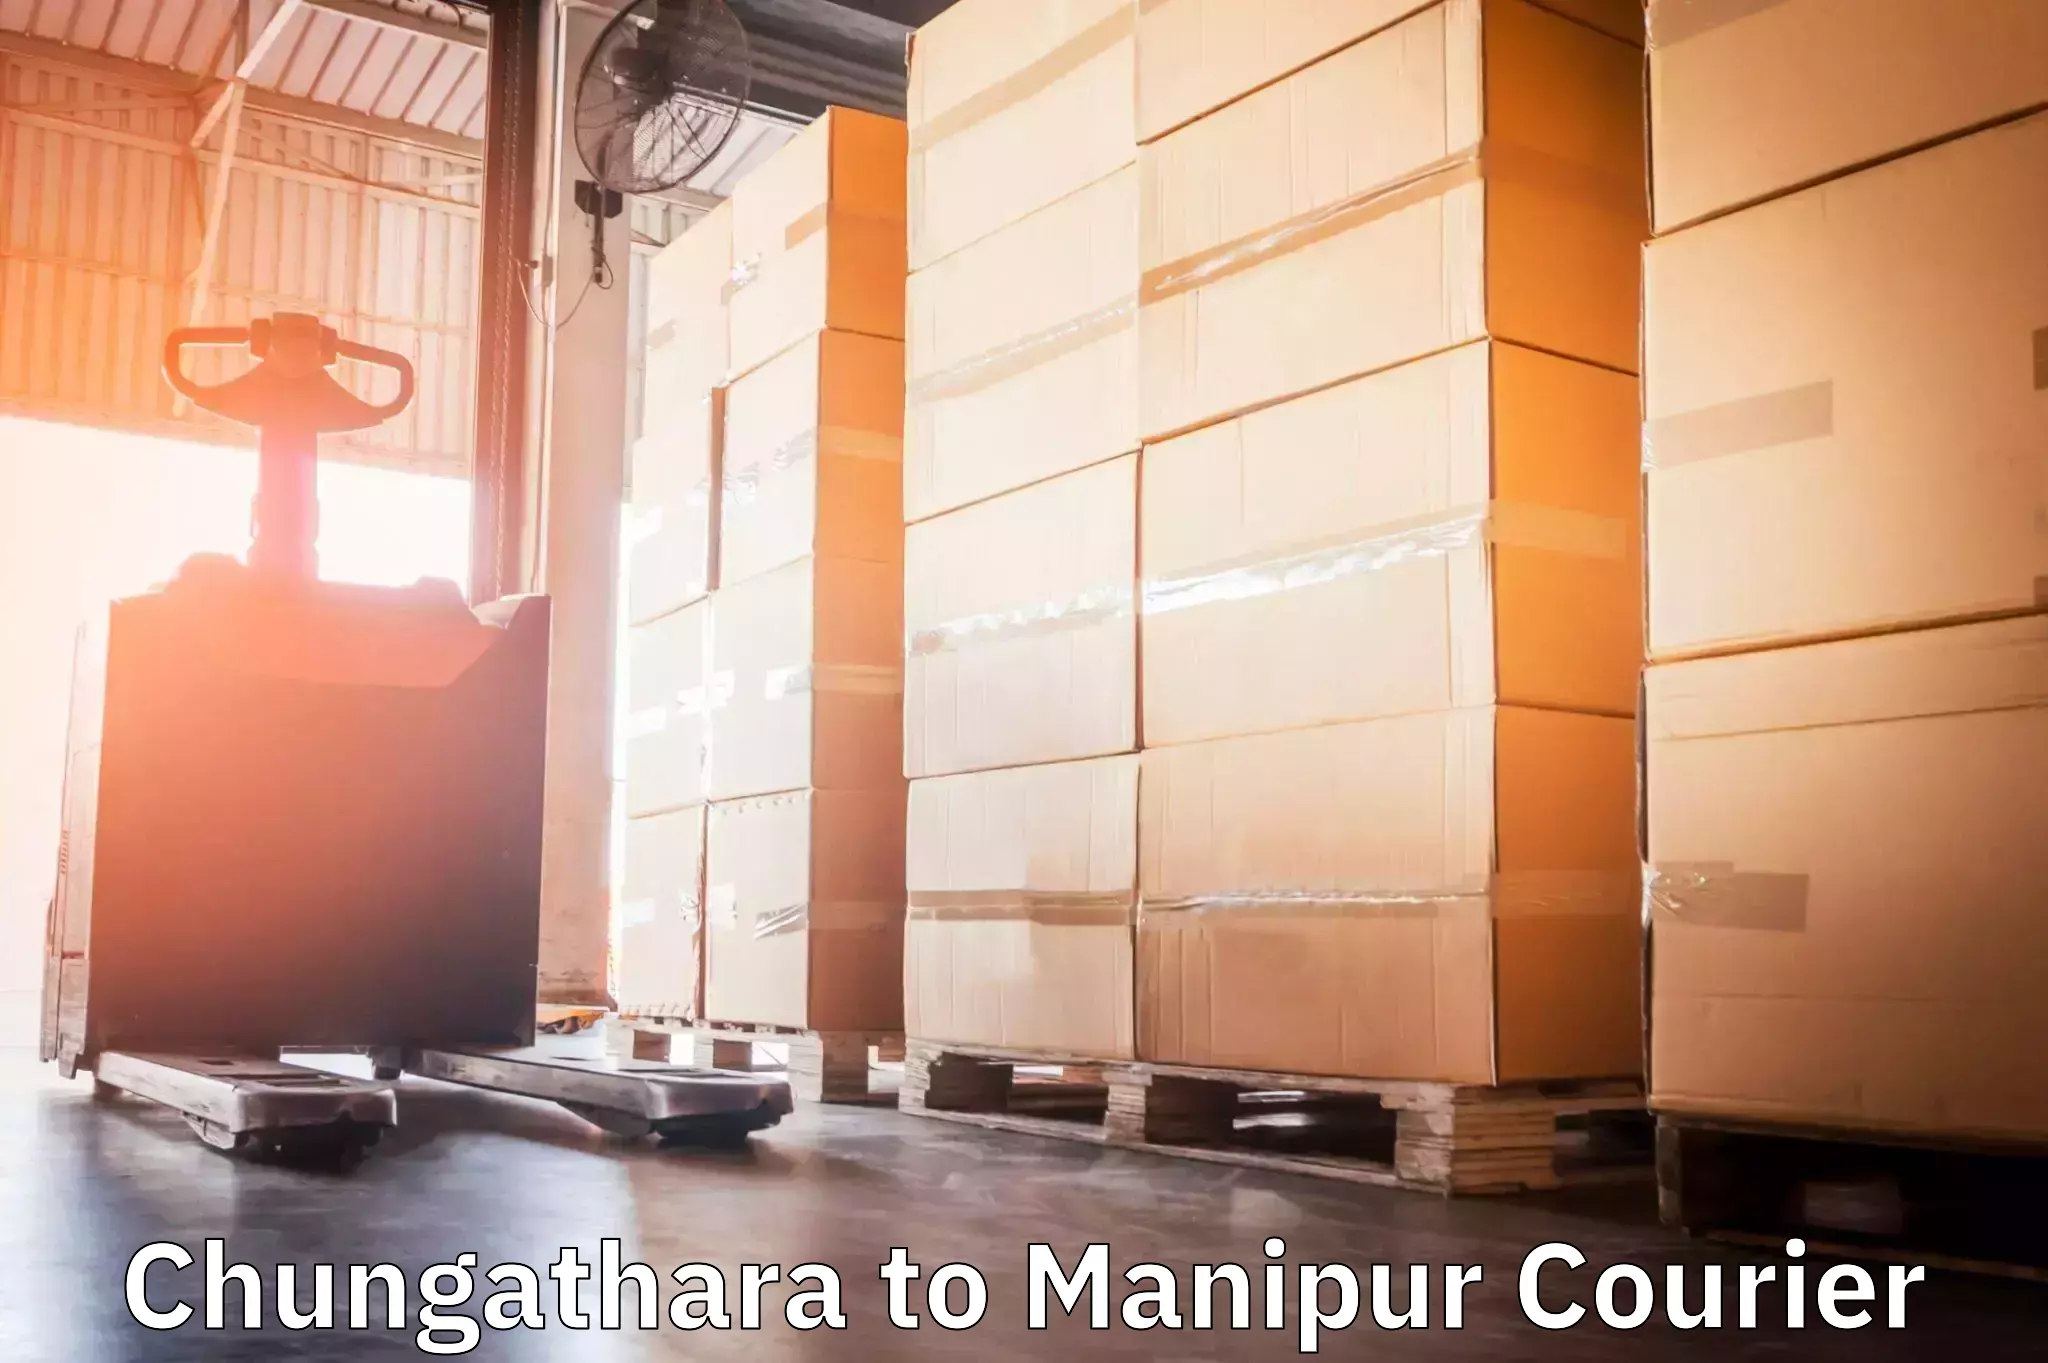 Logistics and distribution Chungathara to Kangpokpi